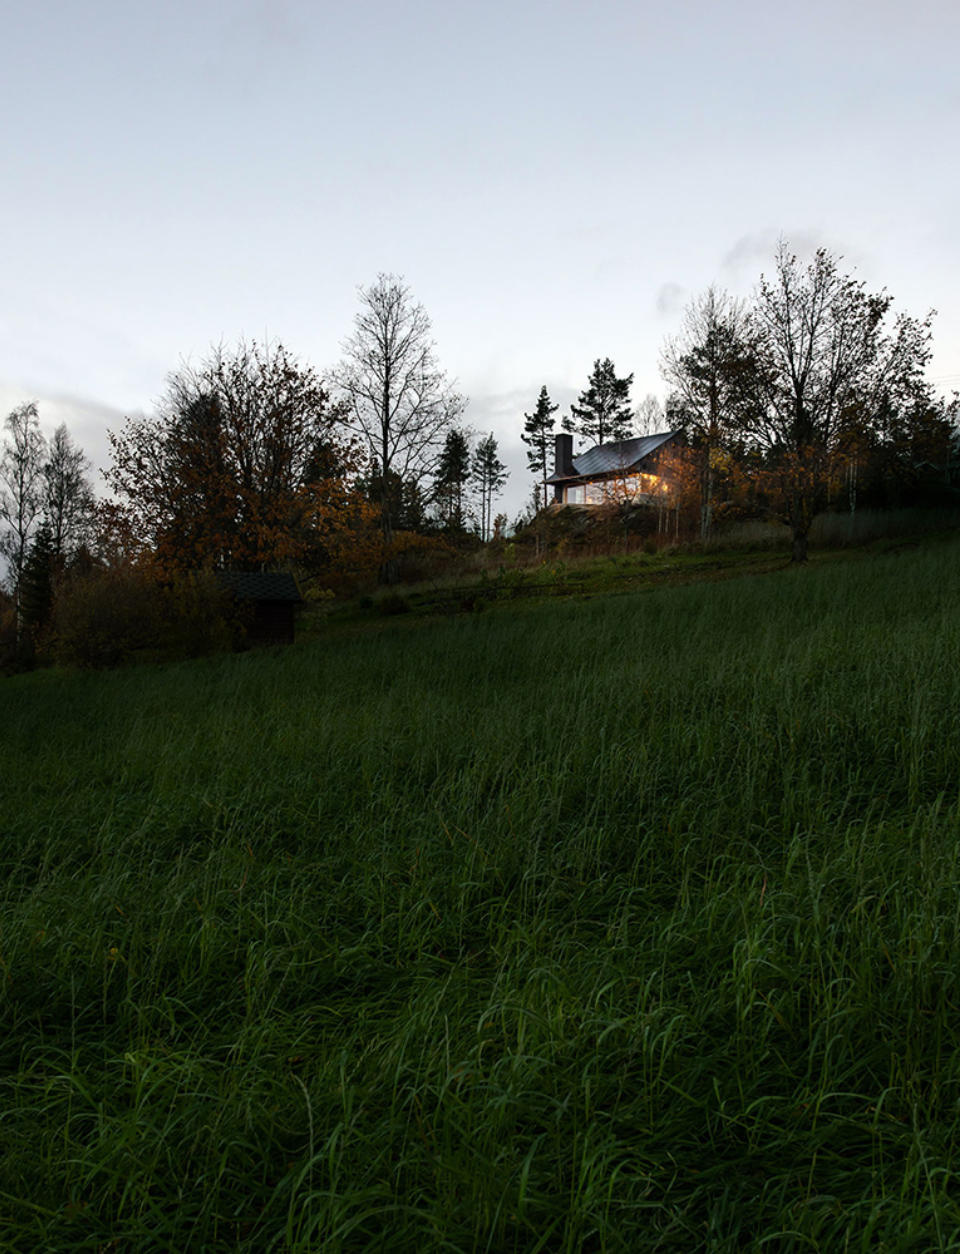 Po pozvolném travnatém kopci můžete sejít až k břehu fjordu.
